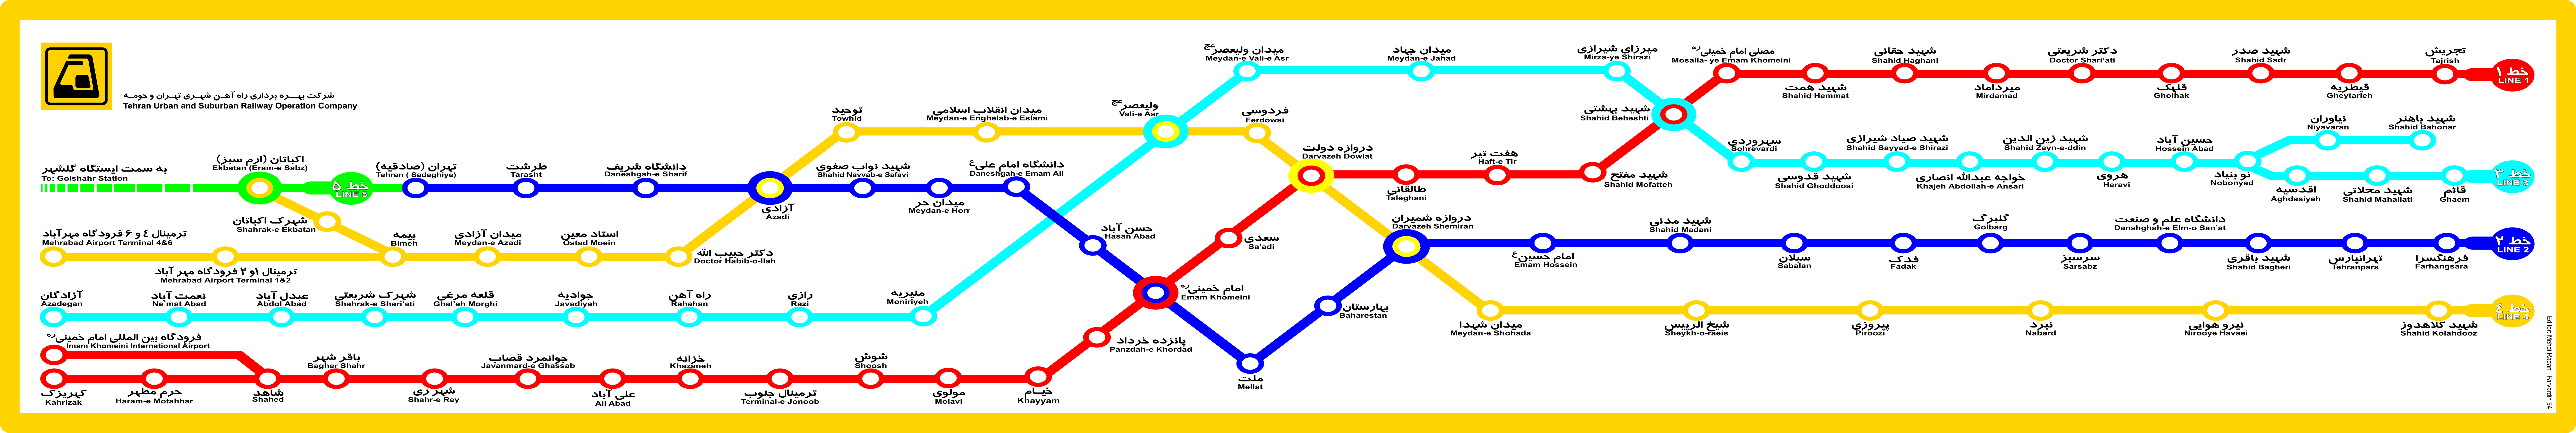 دانلود عکس نقشه مترو تهران با کیفیت بالا